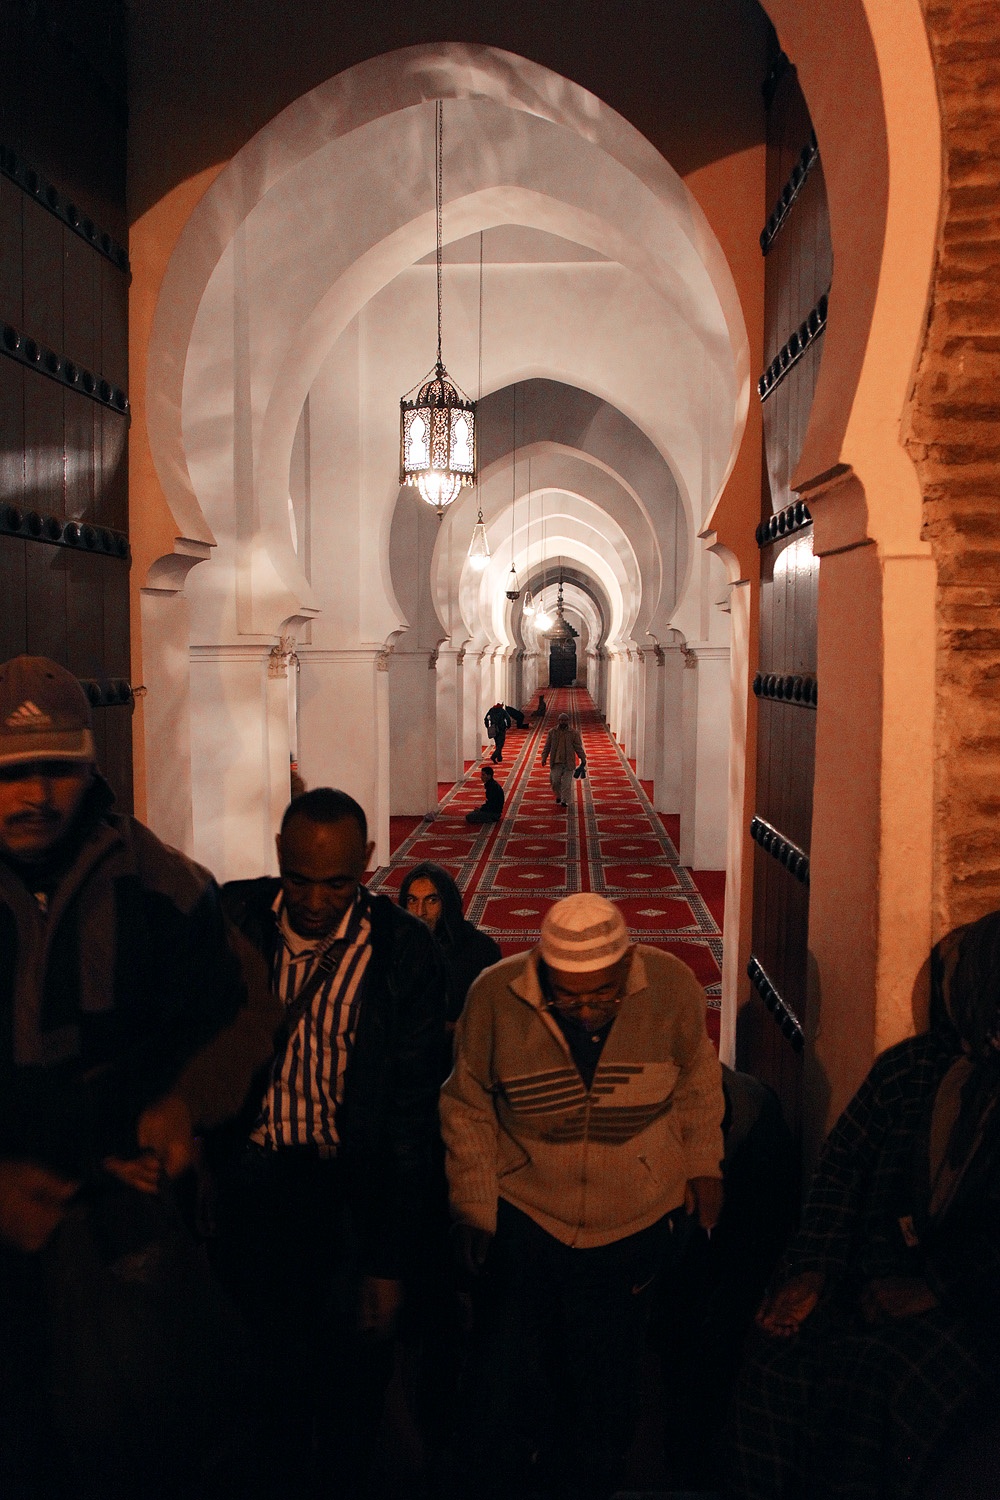 bill-hocker-grand-mosque-marrakech-morocco-2012